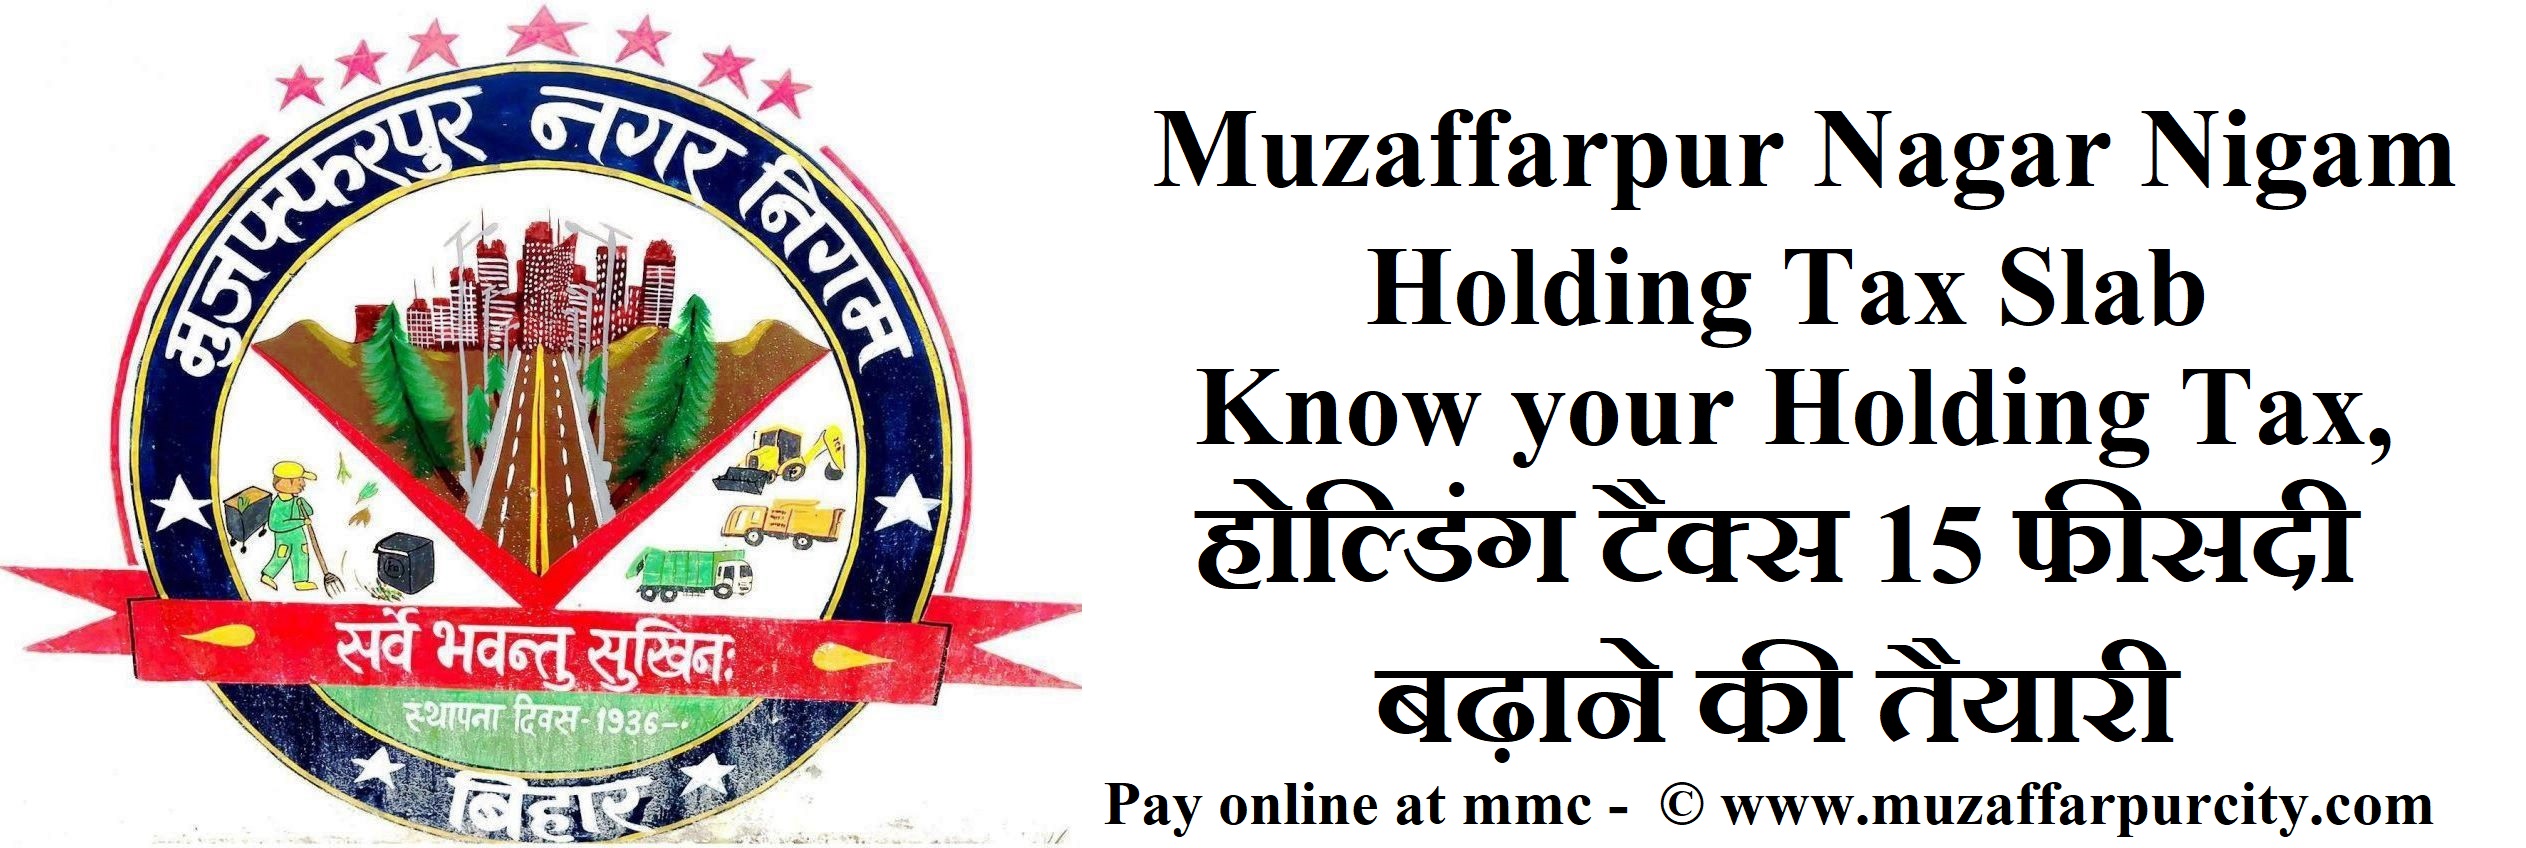 Muzaffarpur-Nagar-Nigam-holding-tax